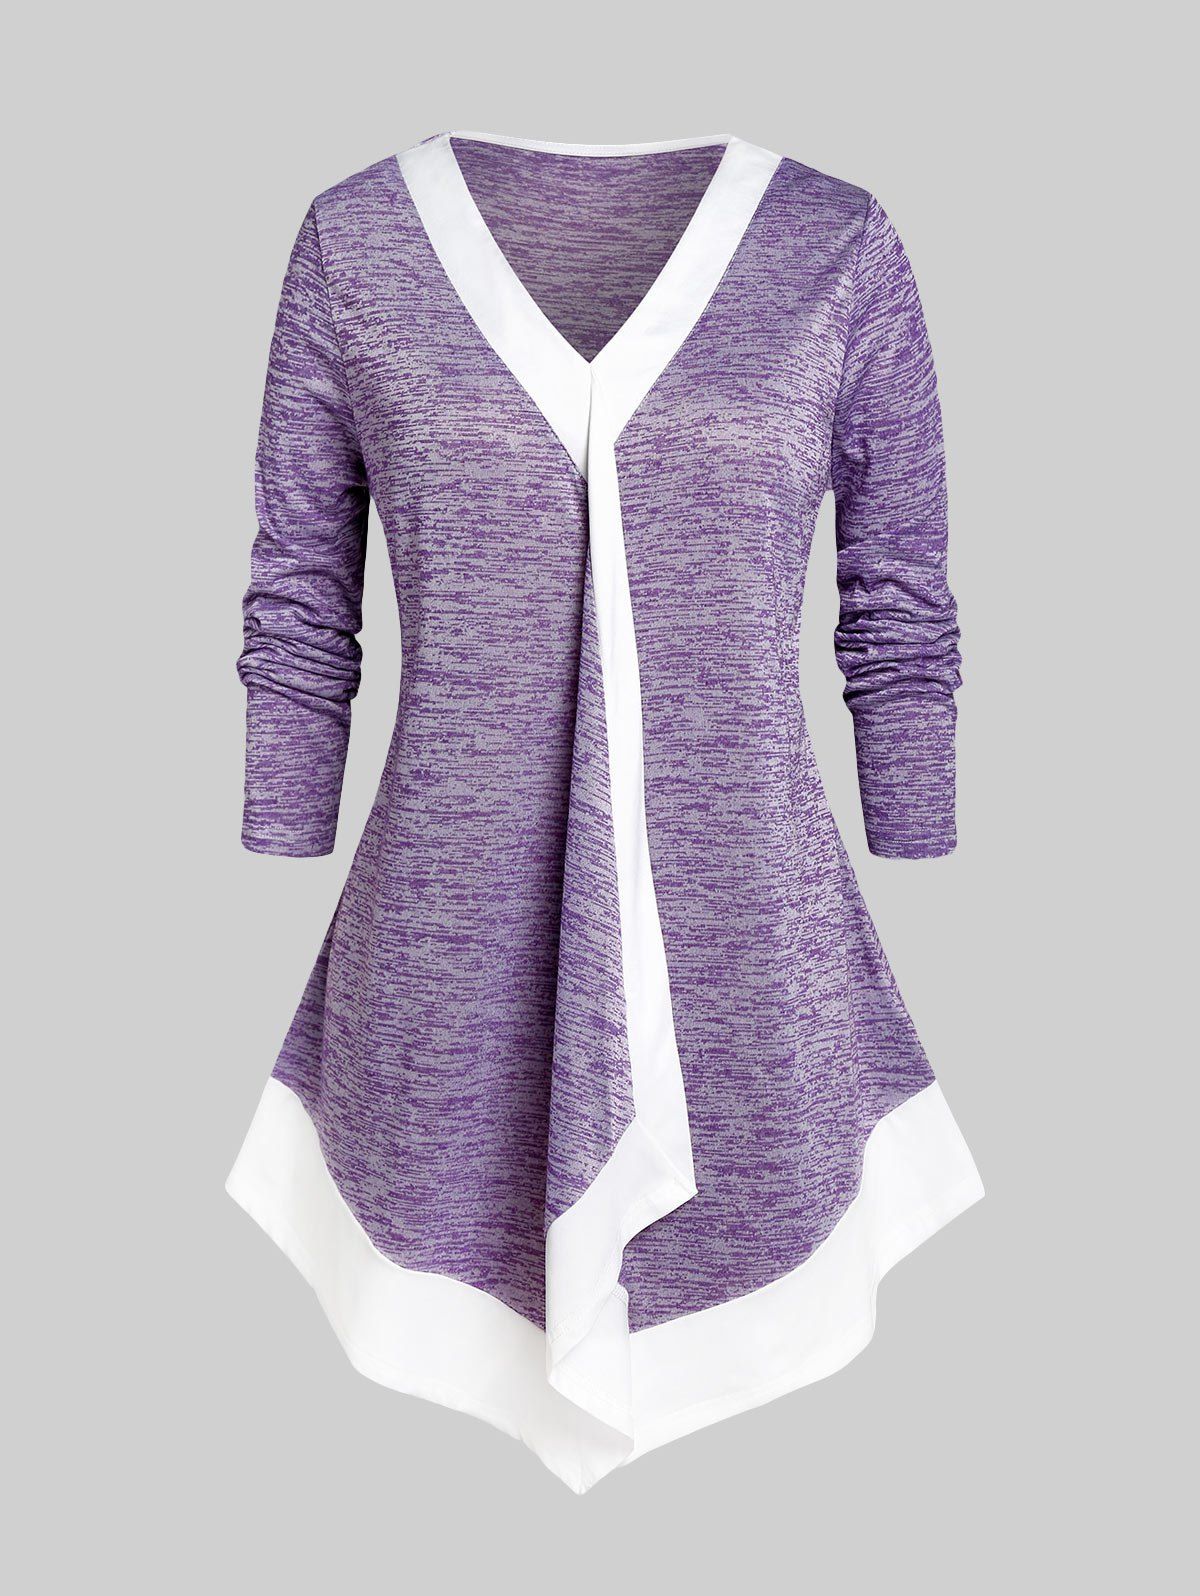 T-shirt Irrégulier Teinté de Grande Taille - Violet clair 4X